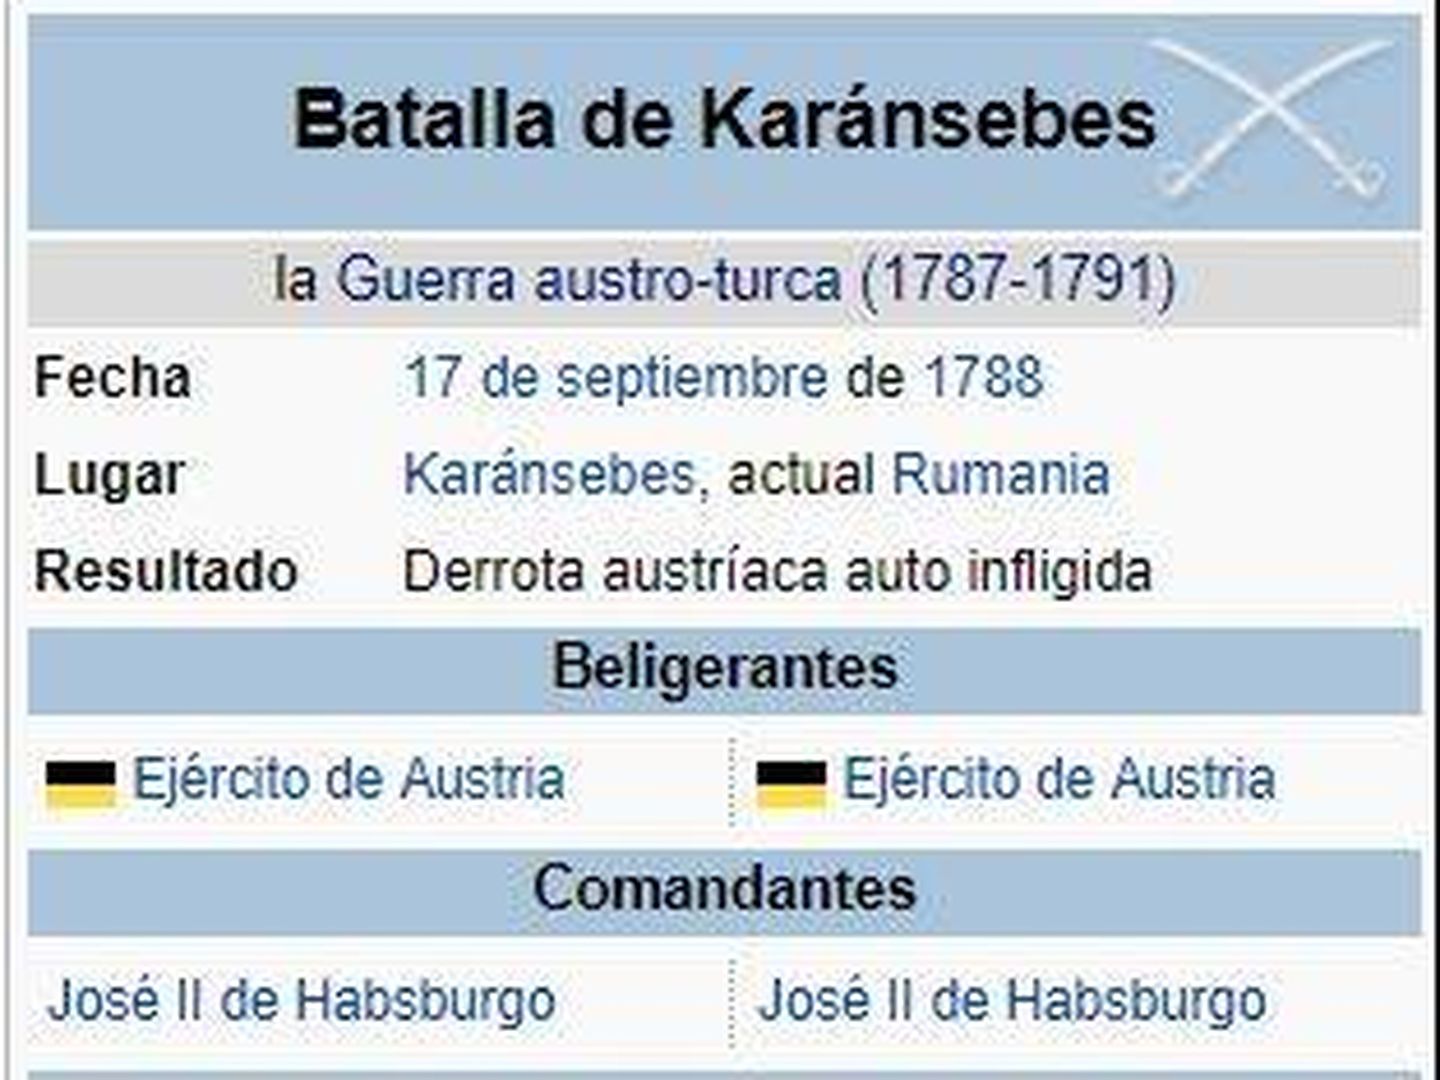 Así es como pasas a la historia en Wikipedia cuando tu ejército pierde los papeles.